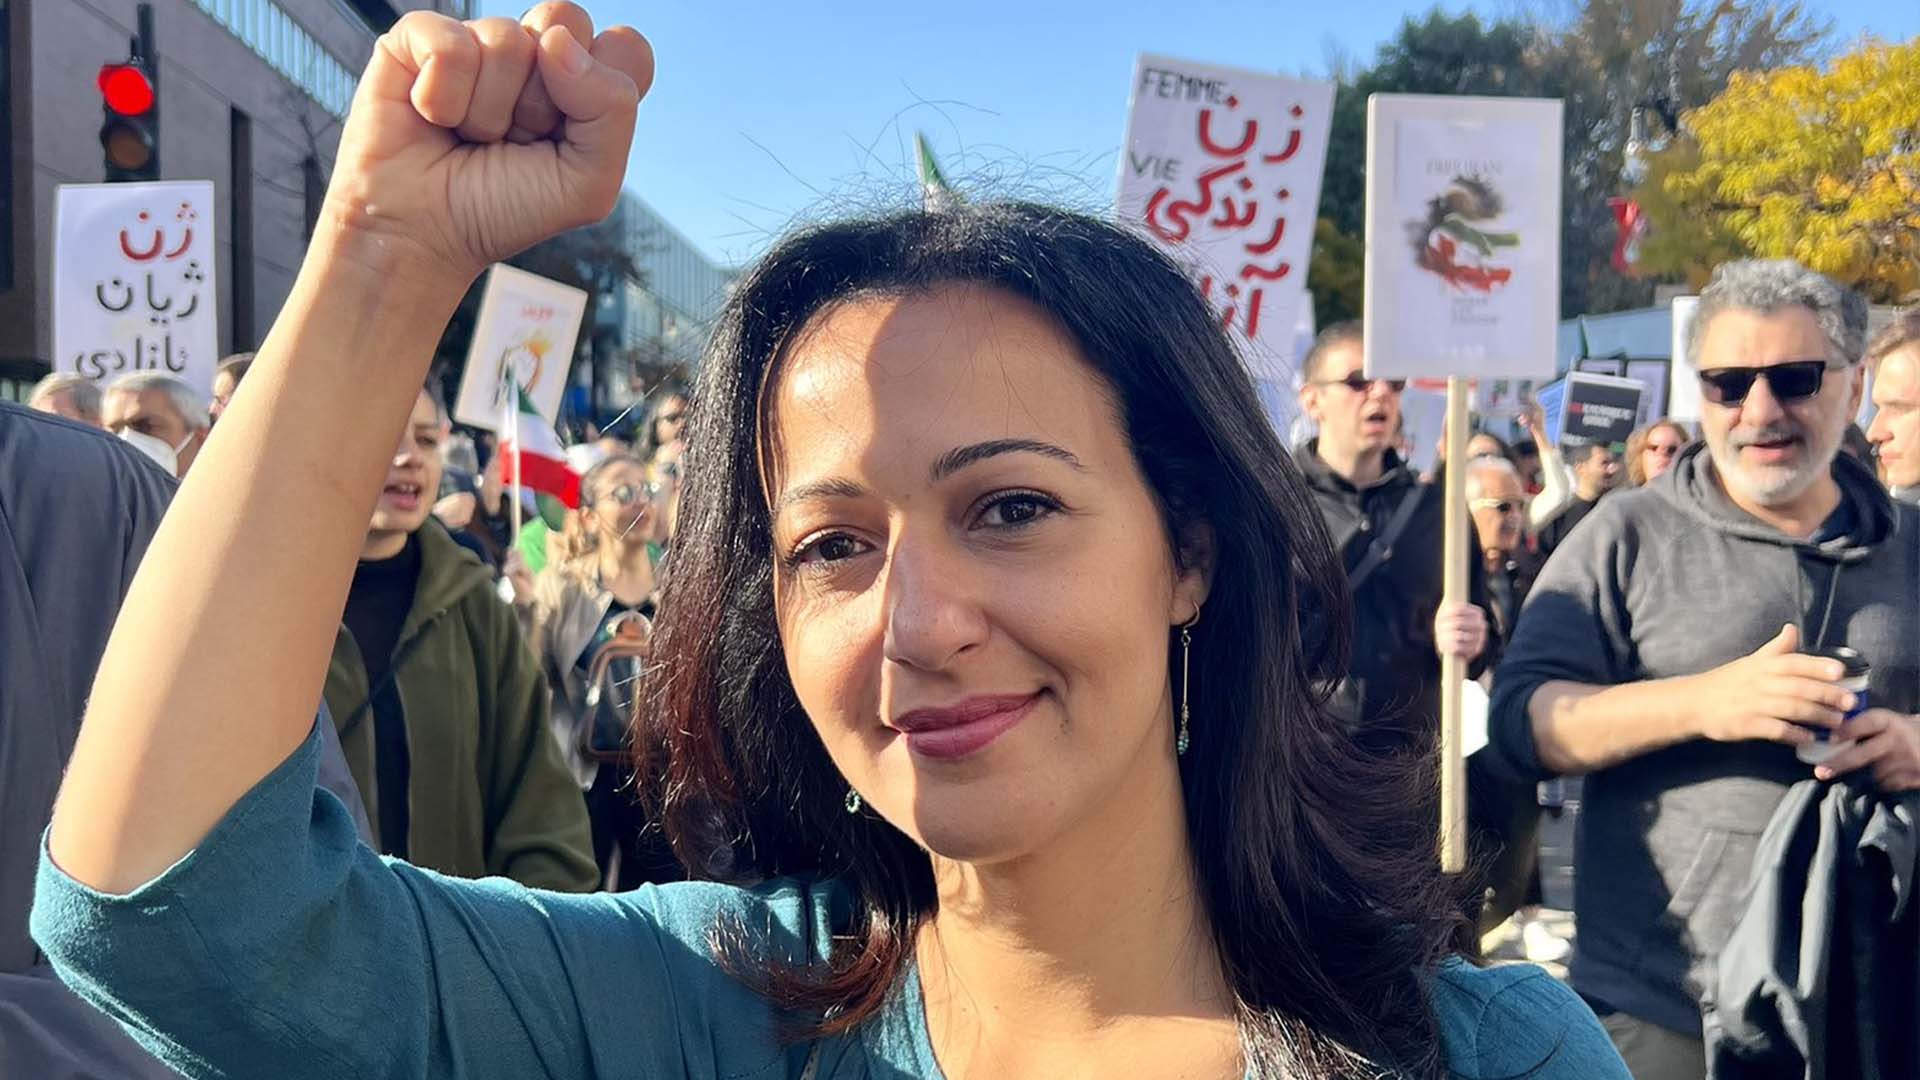 La députée solidaire de Mercier, Ruba Ghazal, a également participé à la manifestation samedi, à Montréal.